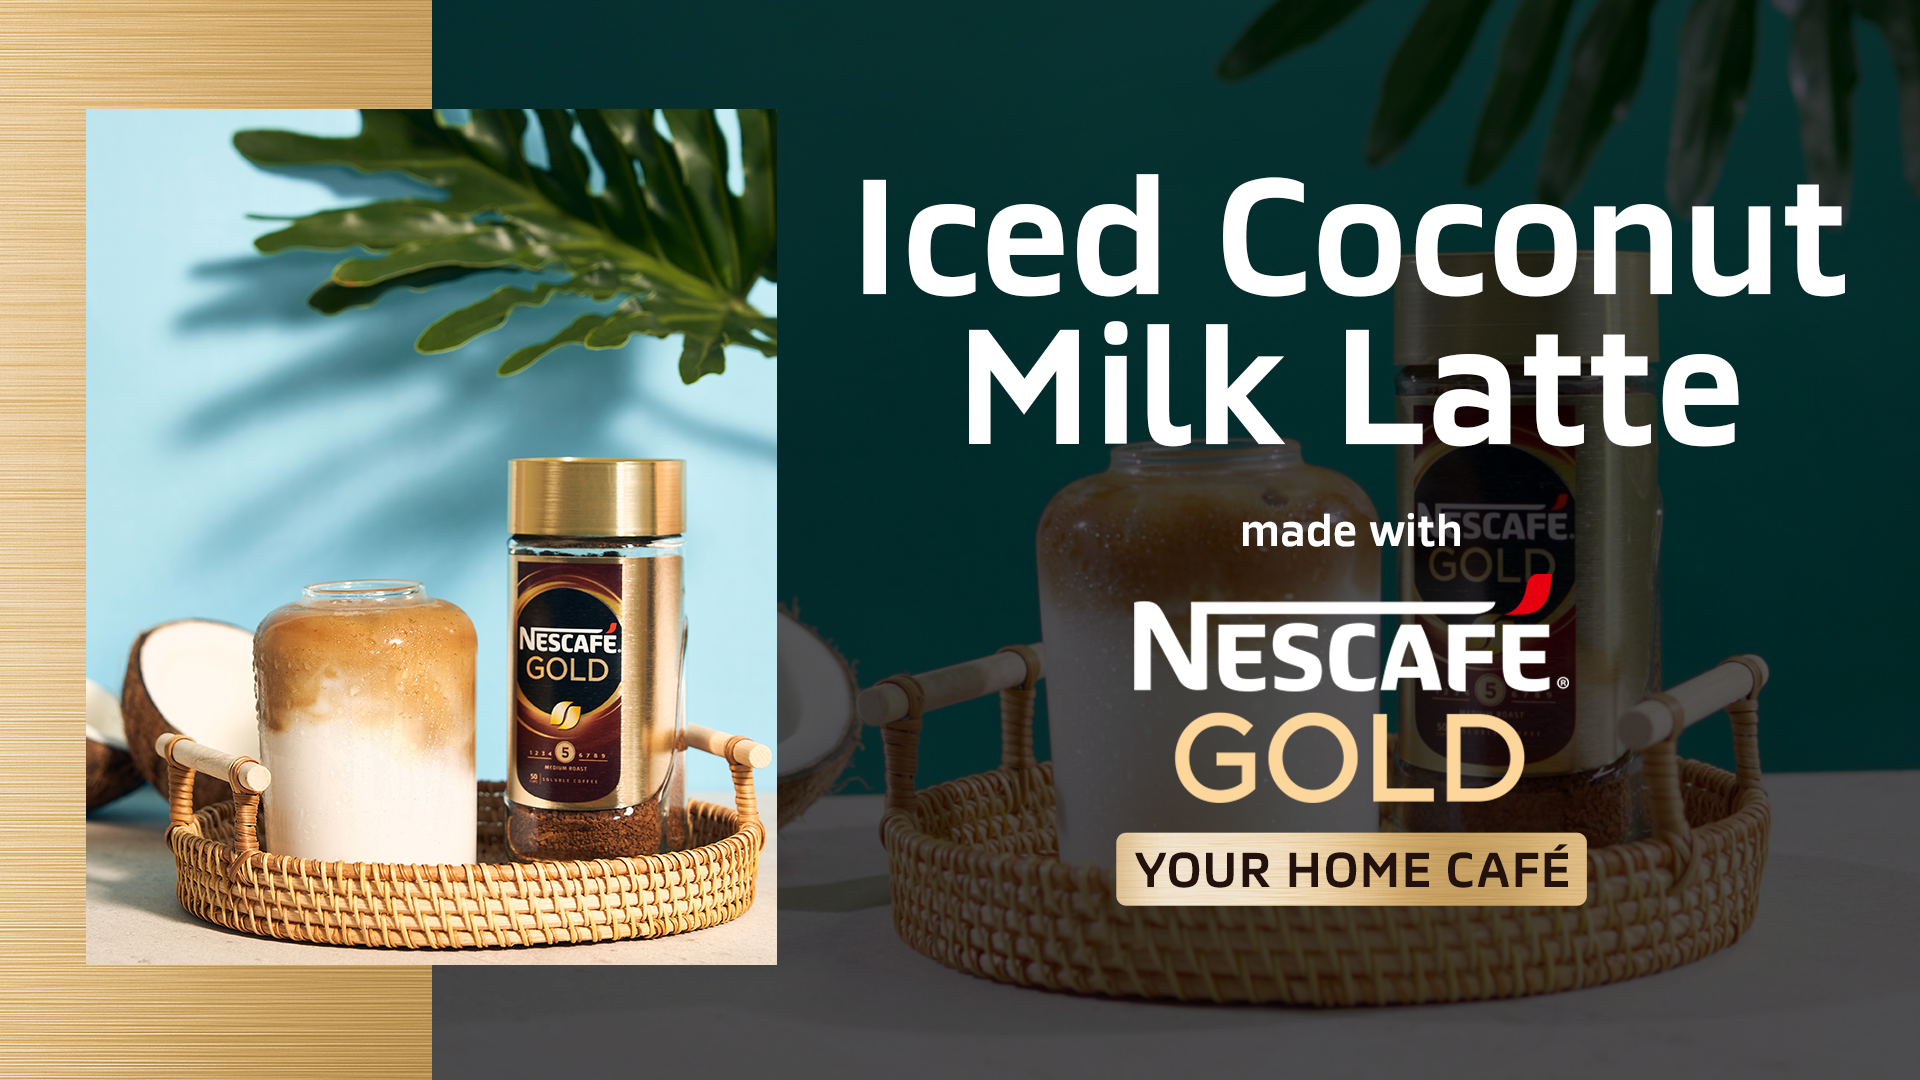 Iced Coconut Milk Latte recipe